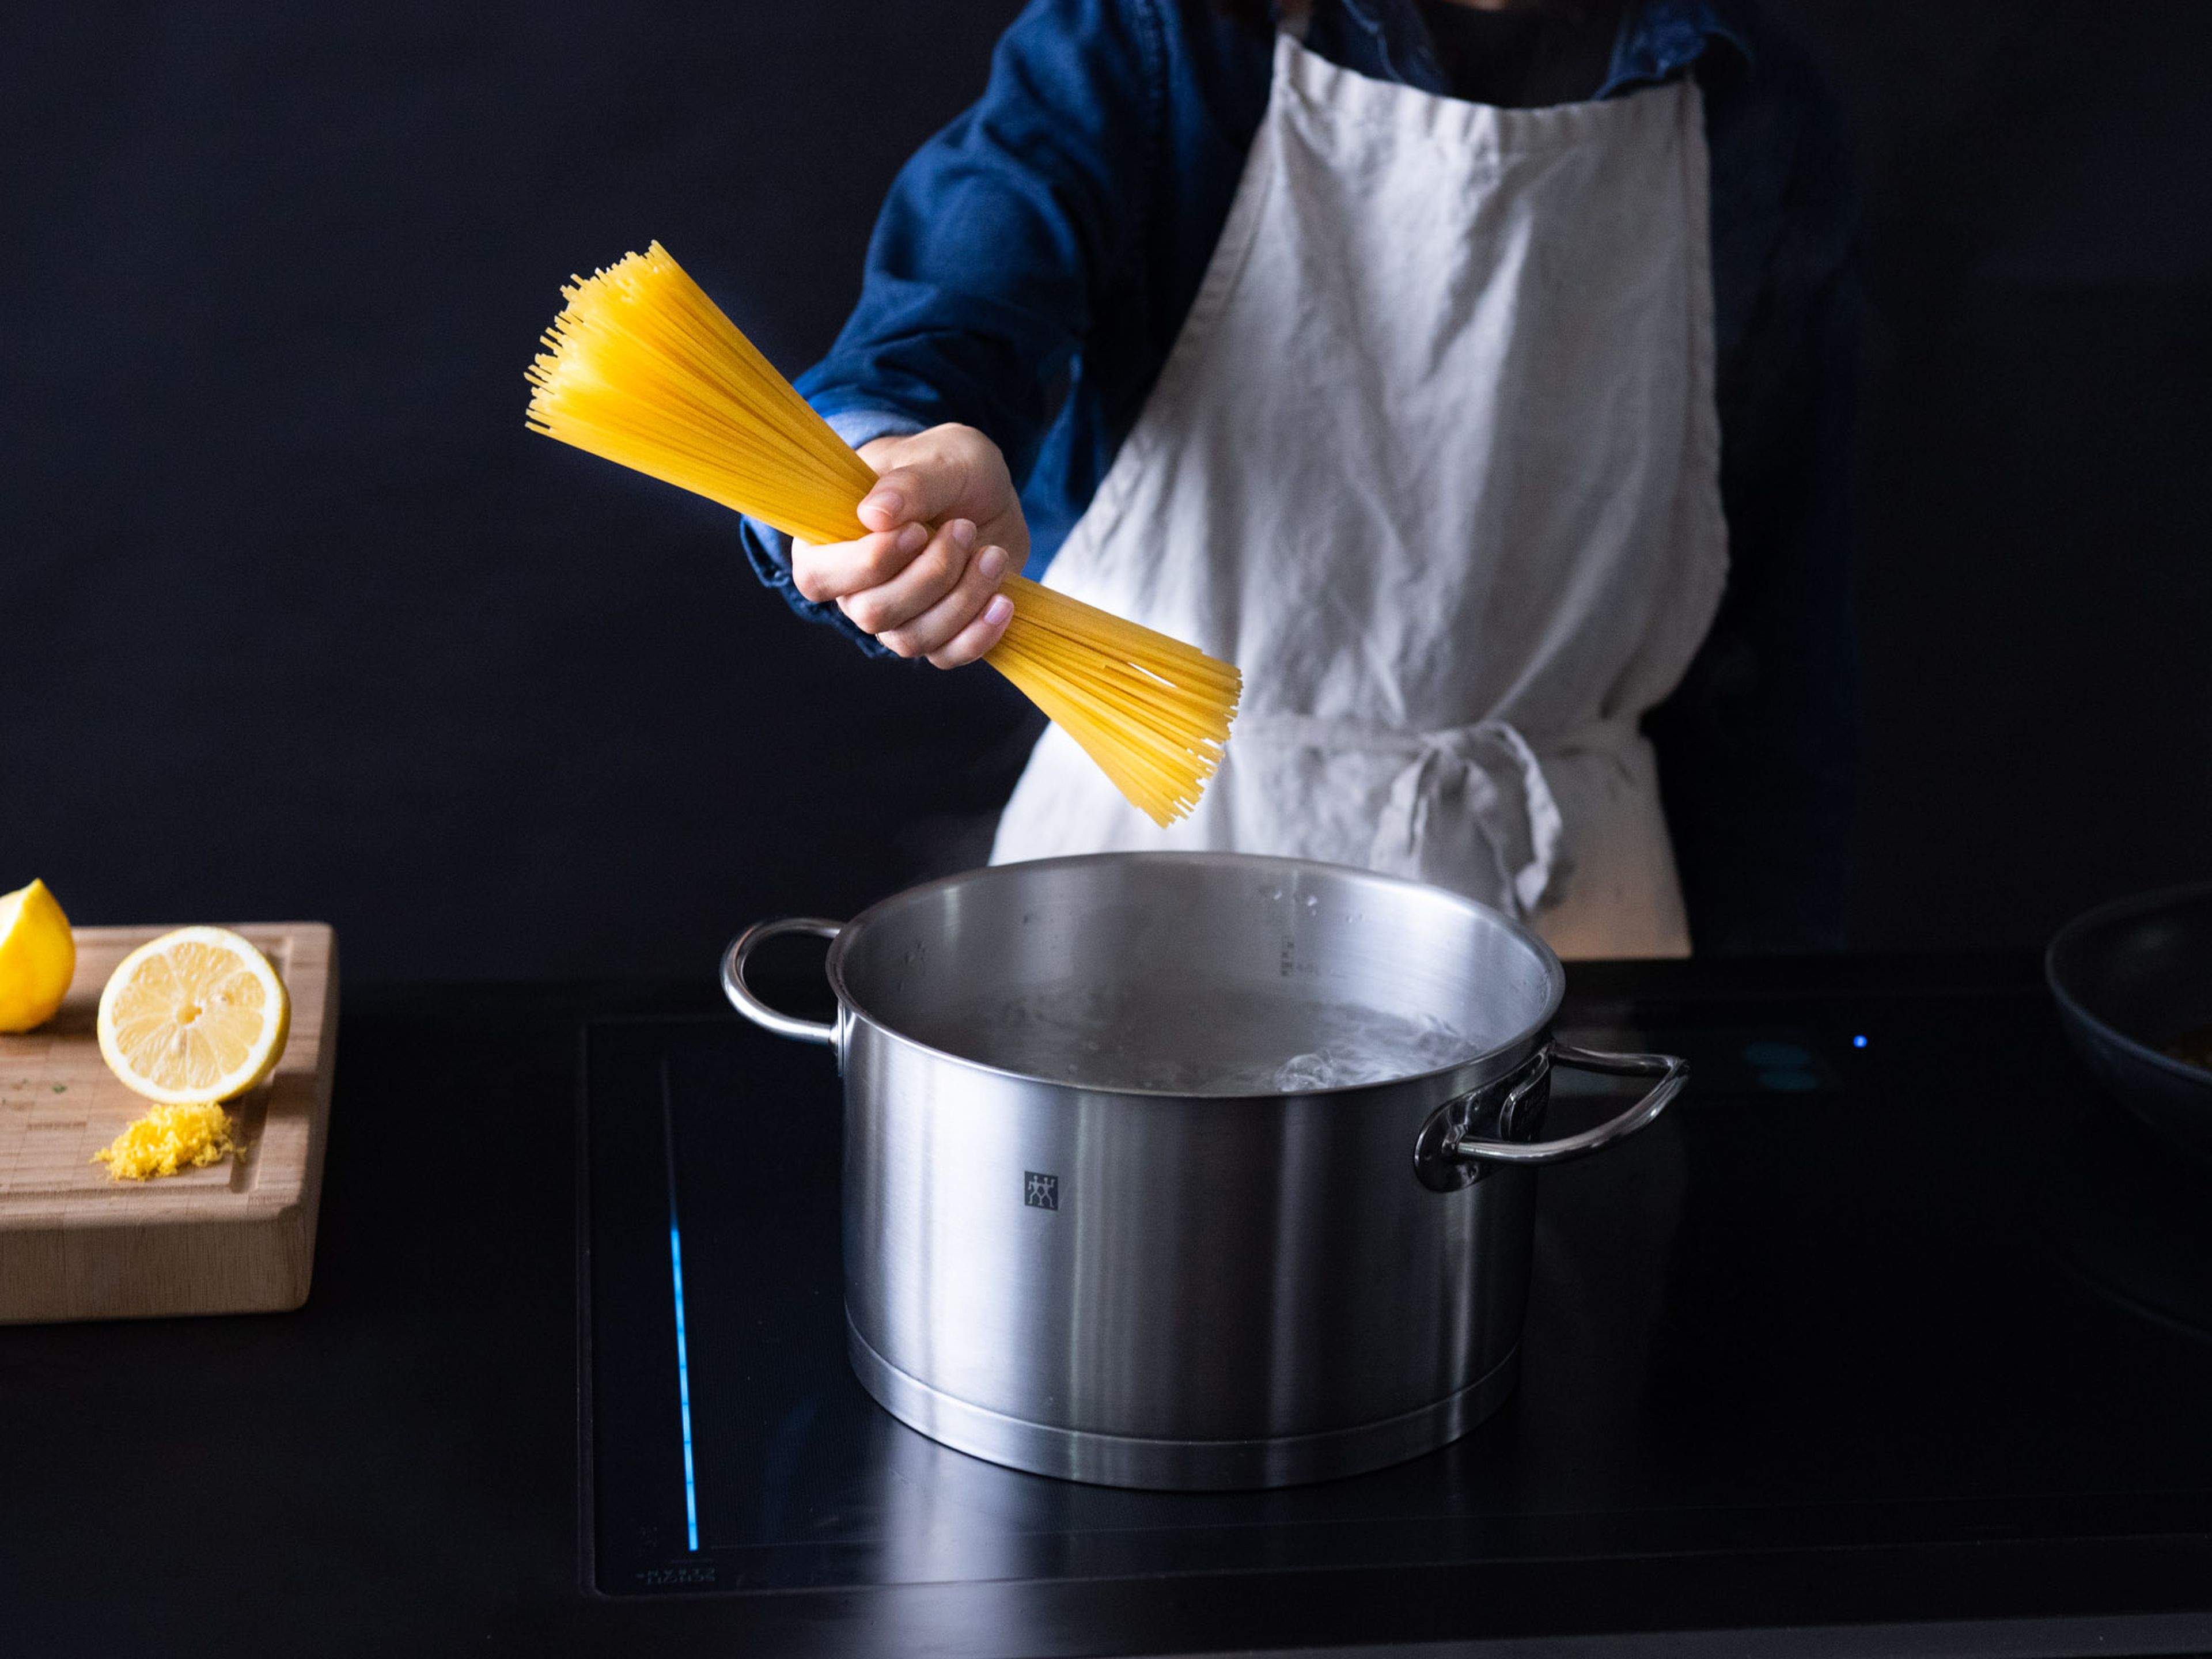 Einen Topf mit Wasser zum Kochen bringen und großzügig salzen. Spaghetti al dente kochen, abgießen und etwas Pastawasser aufbewahren.